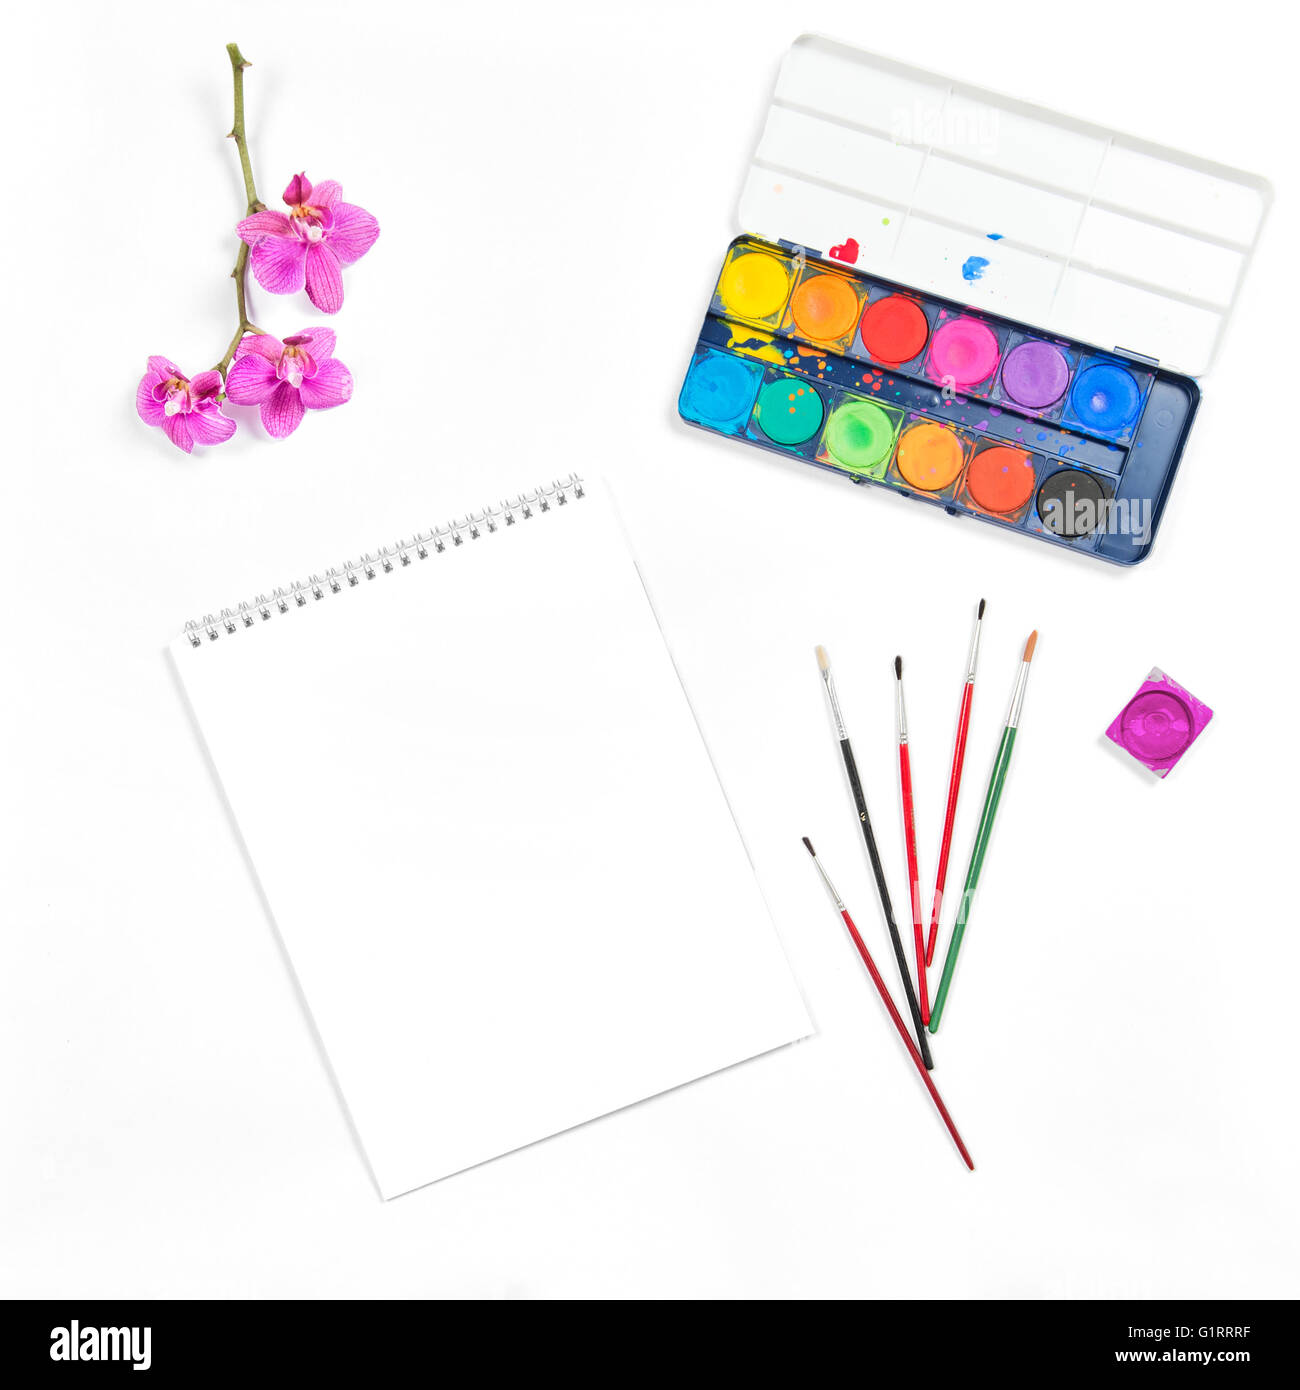 Wohnung legen mit Skizzenbuch, Wasserfarben, Pinsel, Papier, Orchidee Blume auf weißem Hintergrund Stockfoto